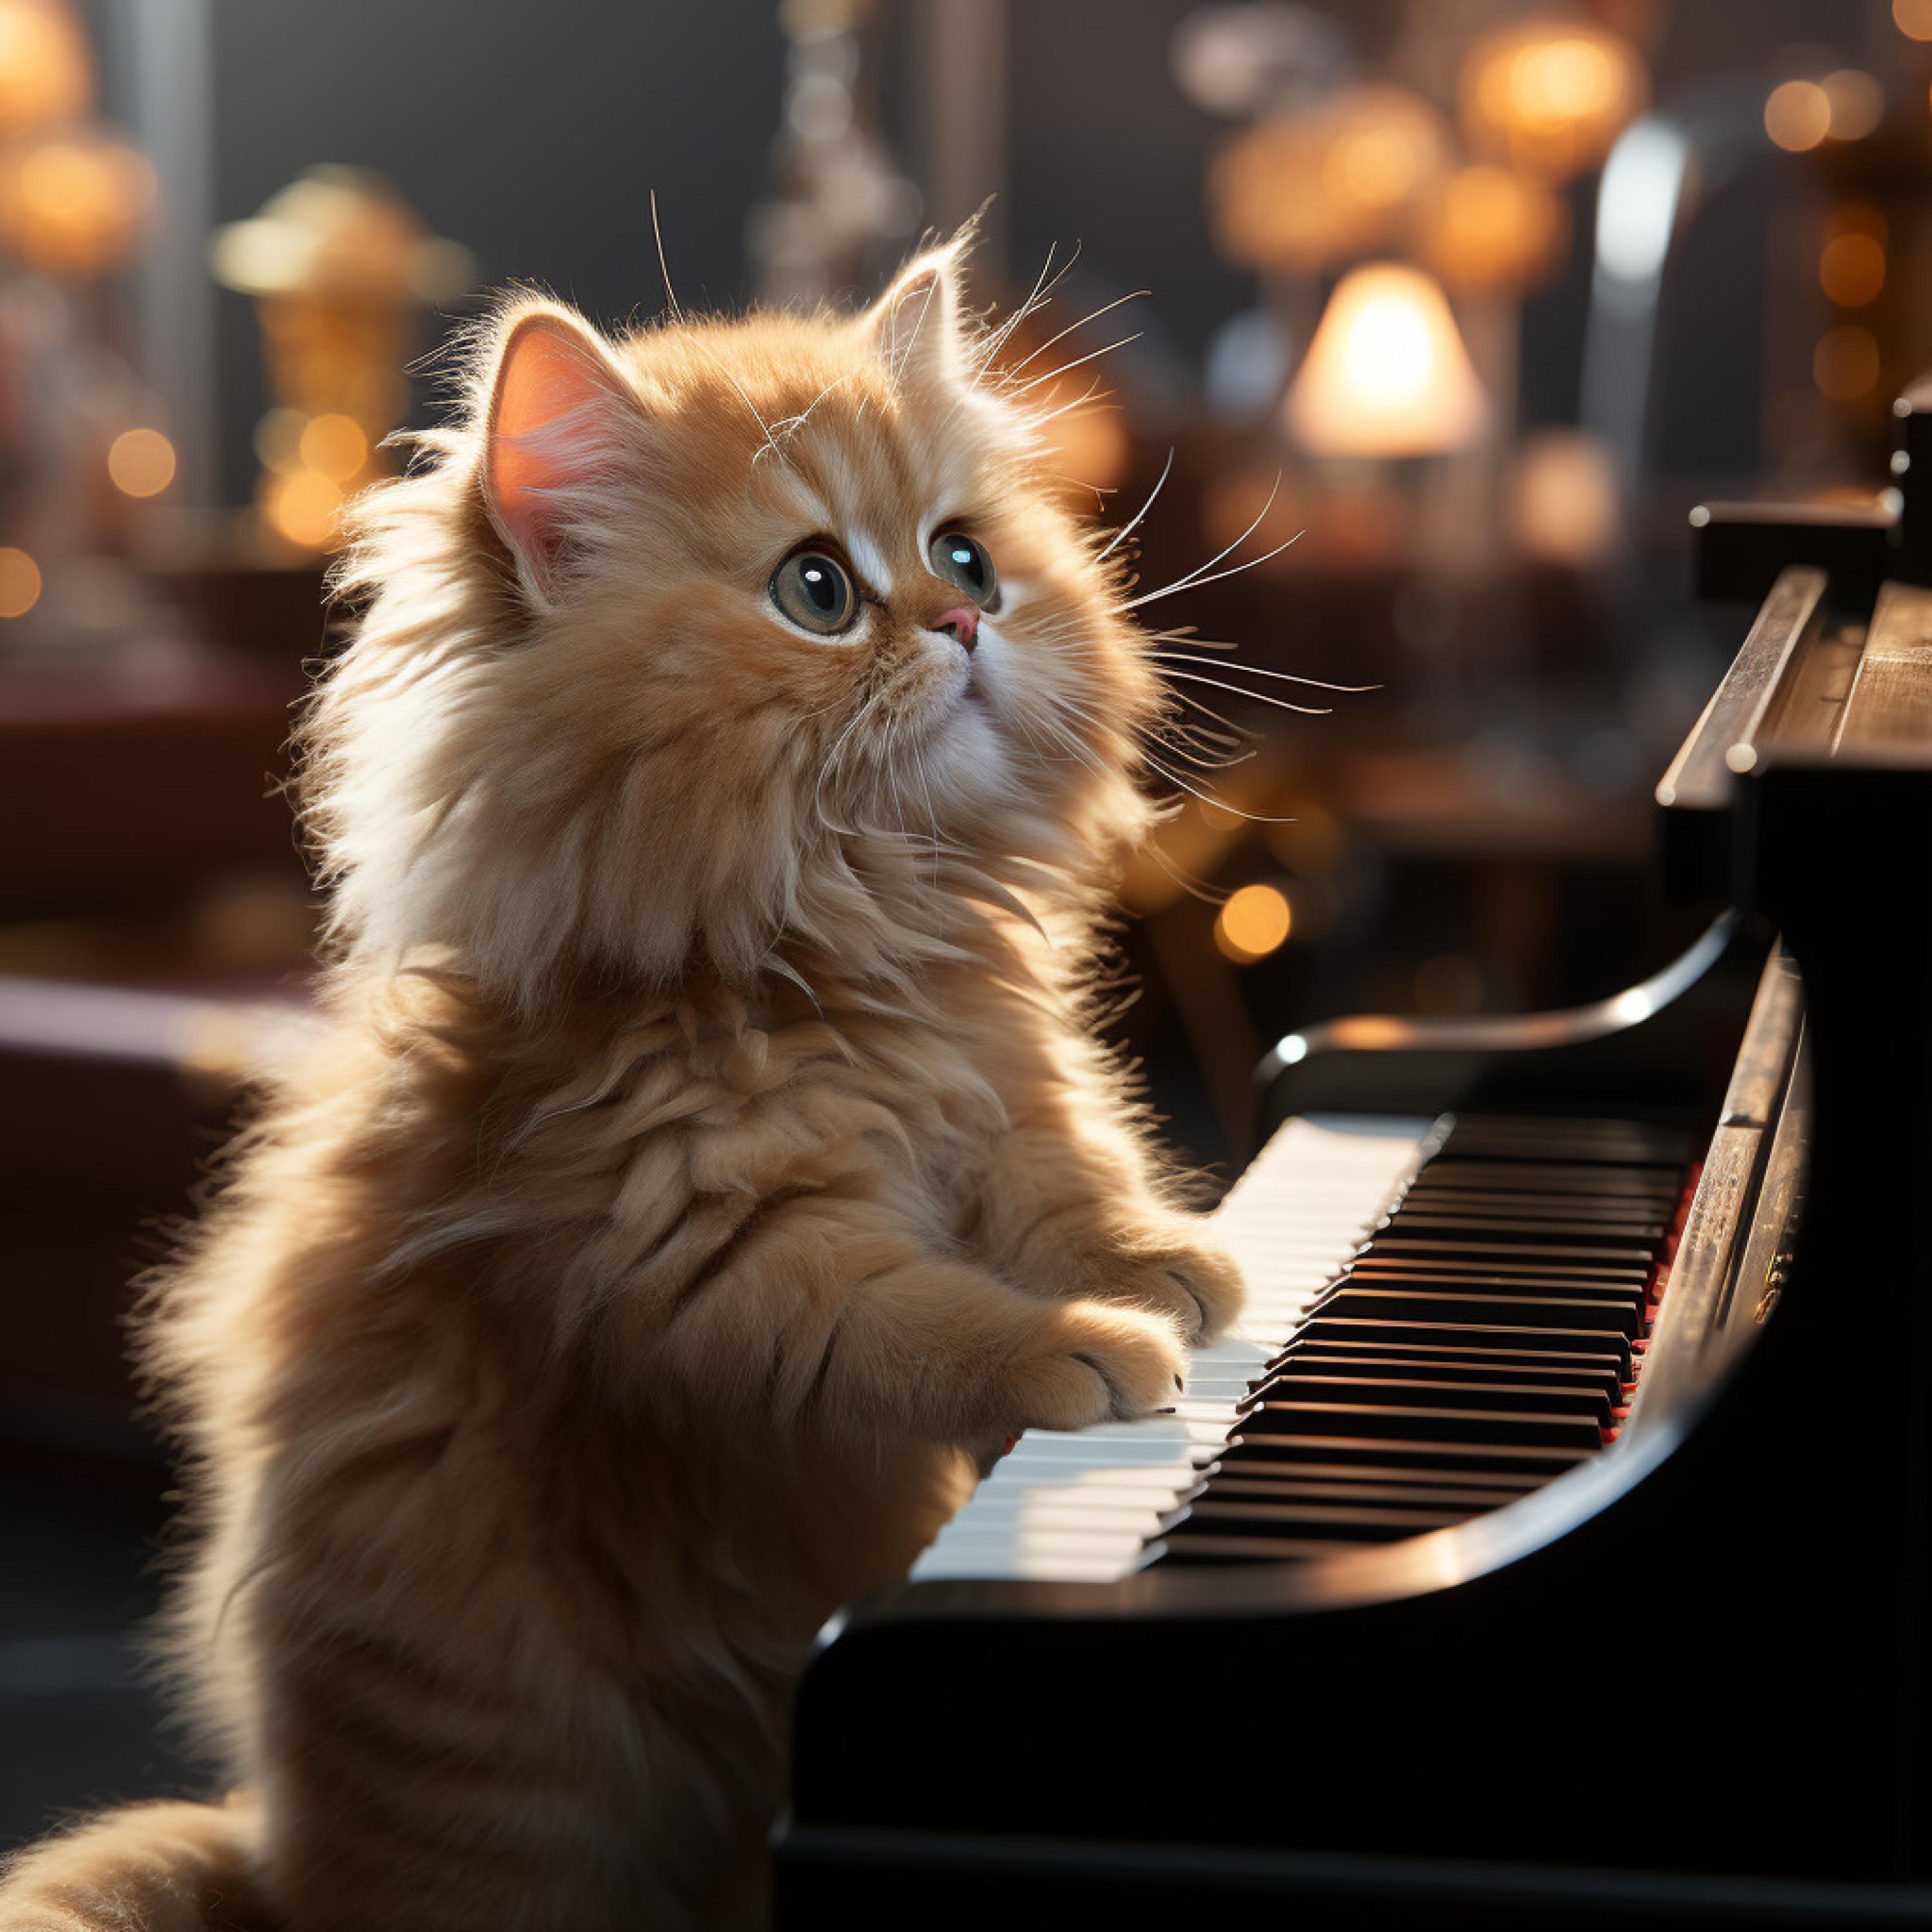 Piano fácil de escuchar - Tranquilidad Elevada: Retiro Místico Del Piano Con Gatos